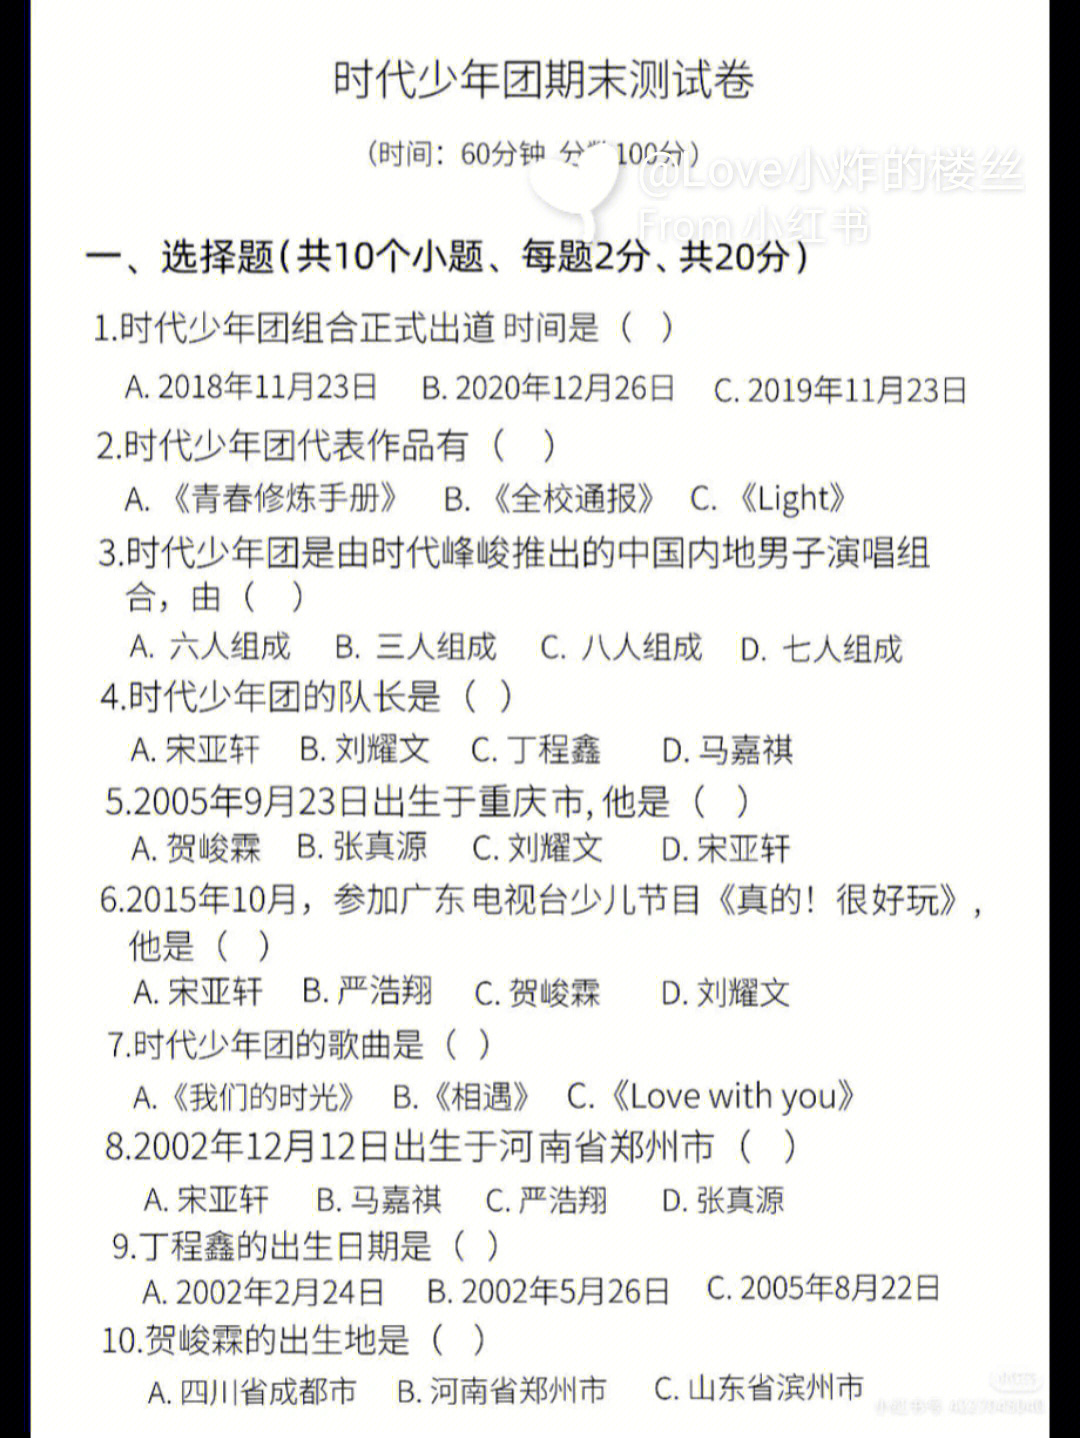 刘耀文考卷内容图片